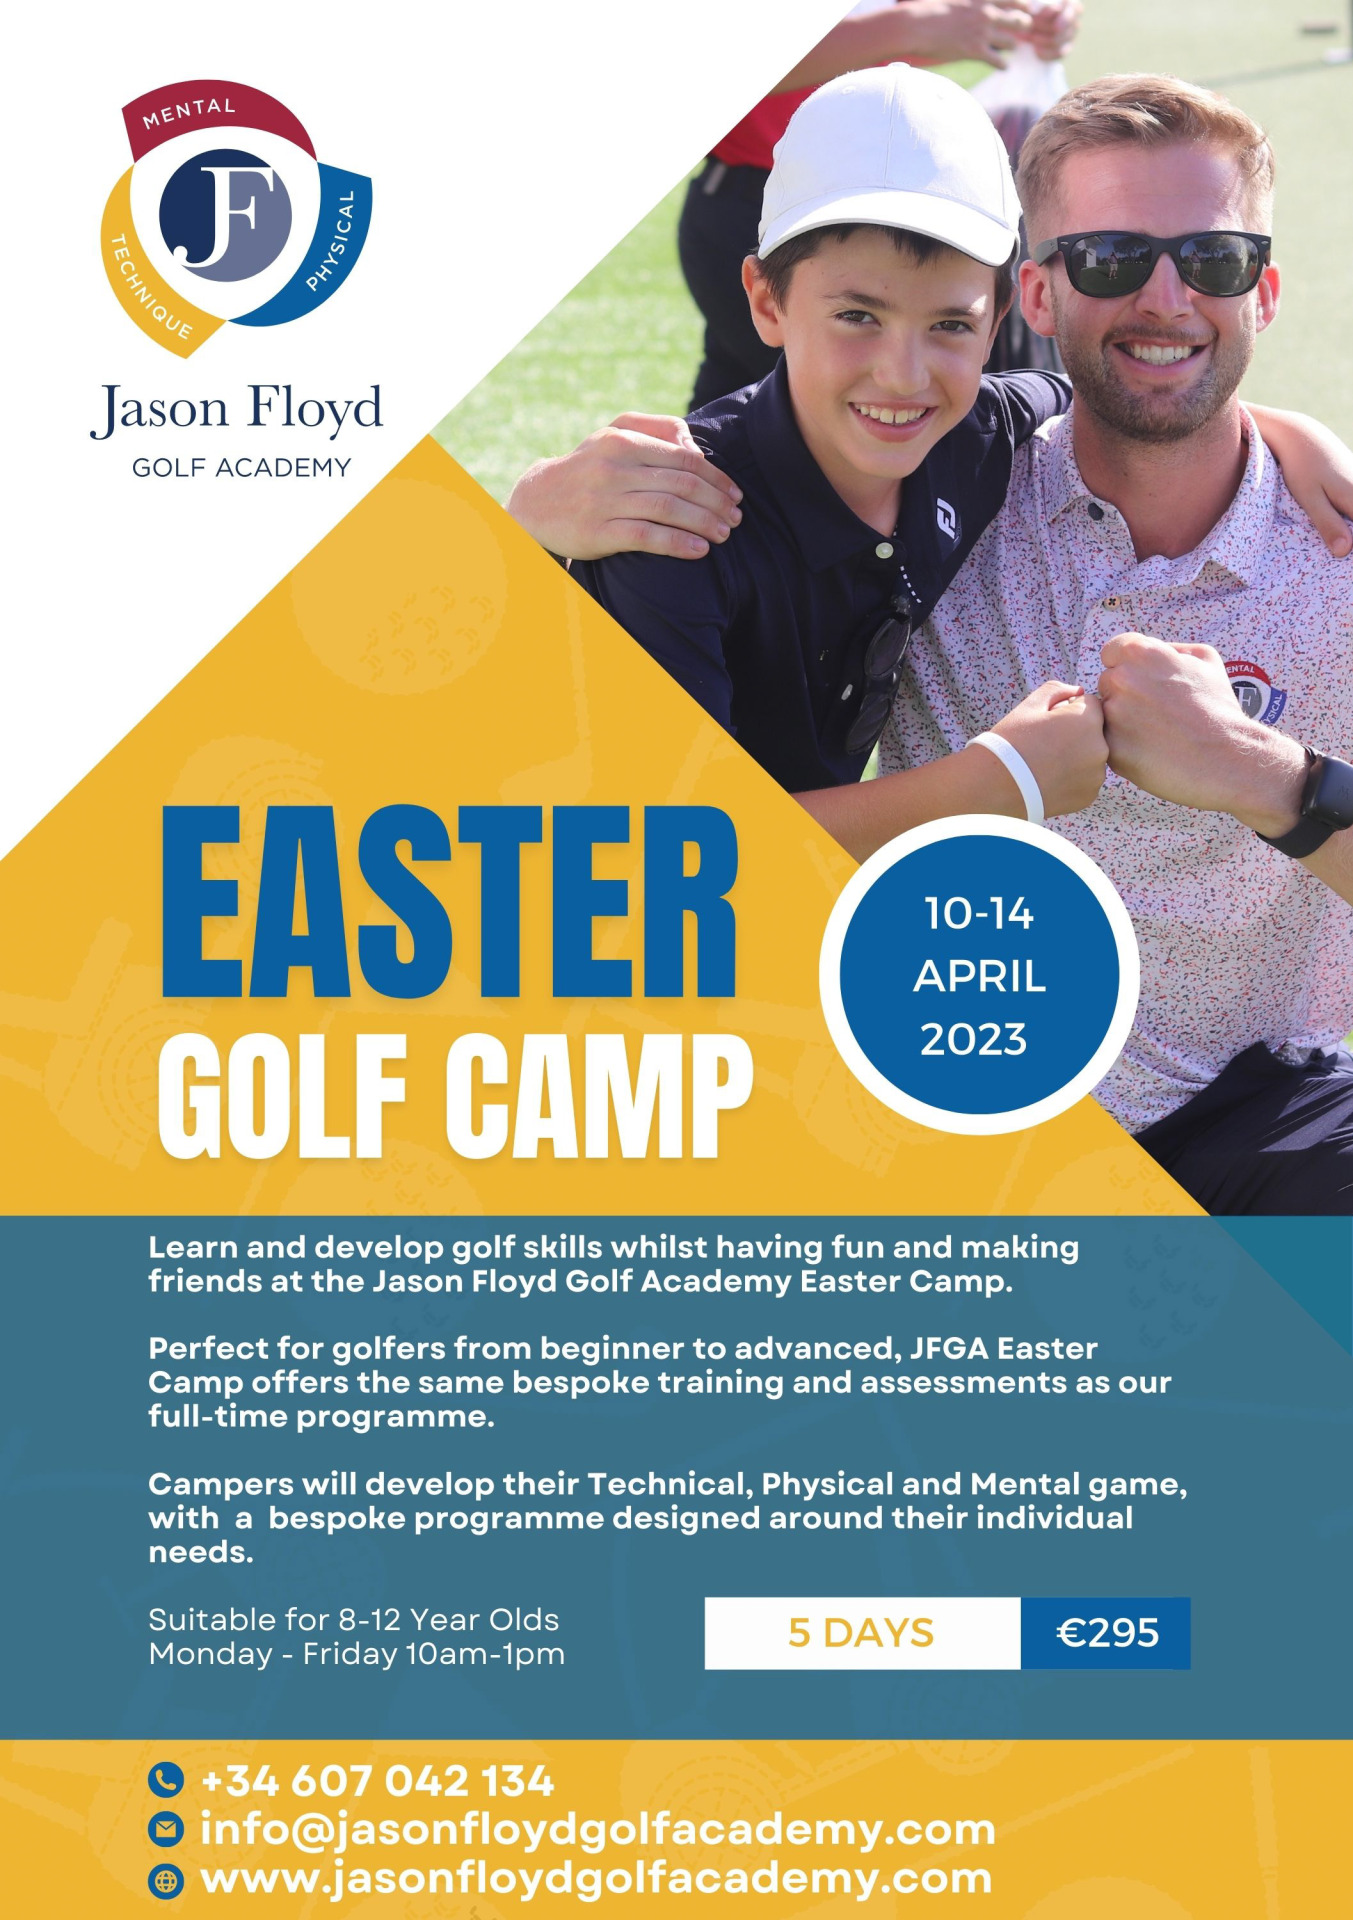 Jason Floyd Golf Academy, Easter Camp